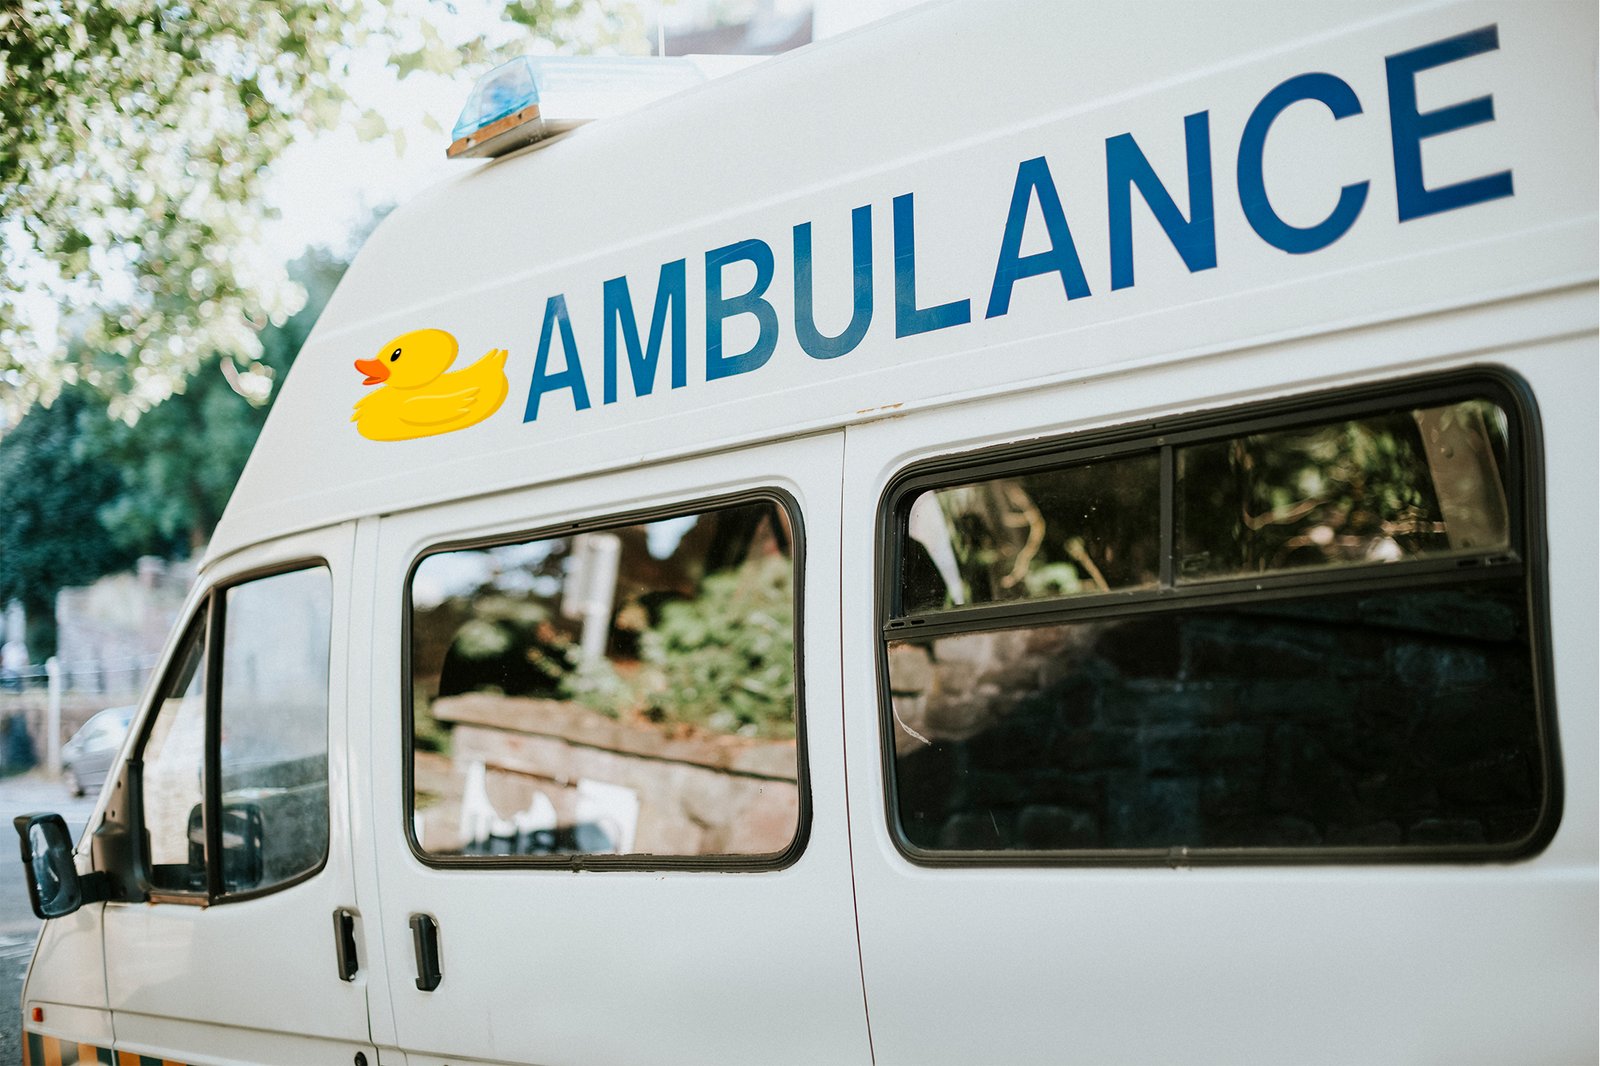 Operativo “ambulancias patito” en CDMX ha llevado a seis unidades al corralón